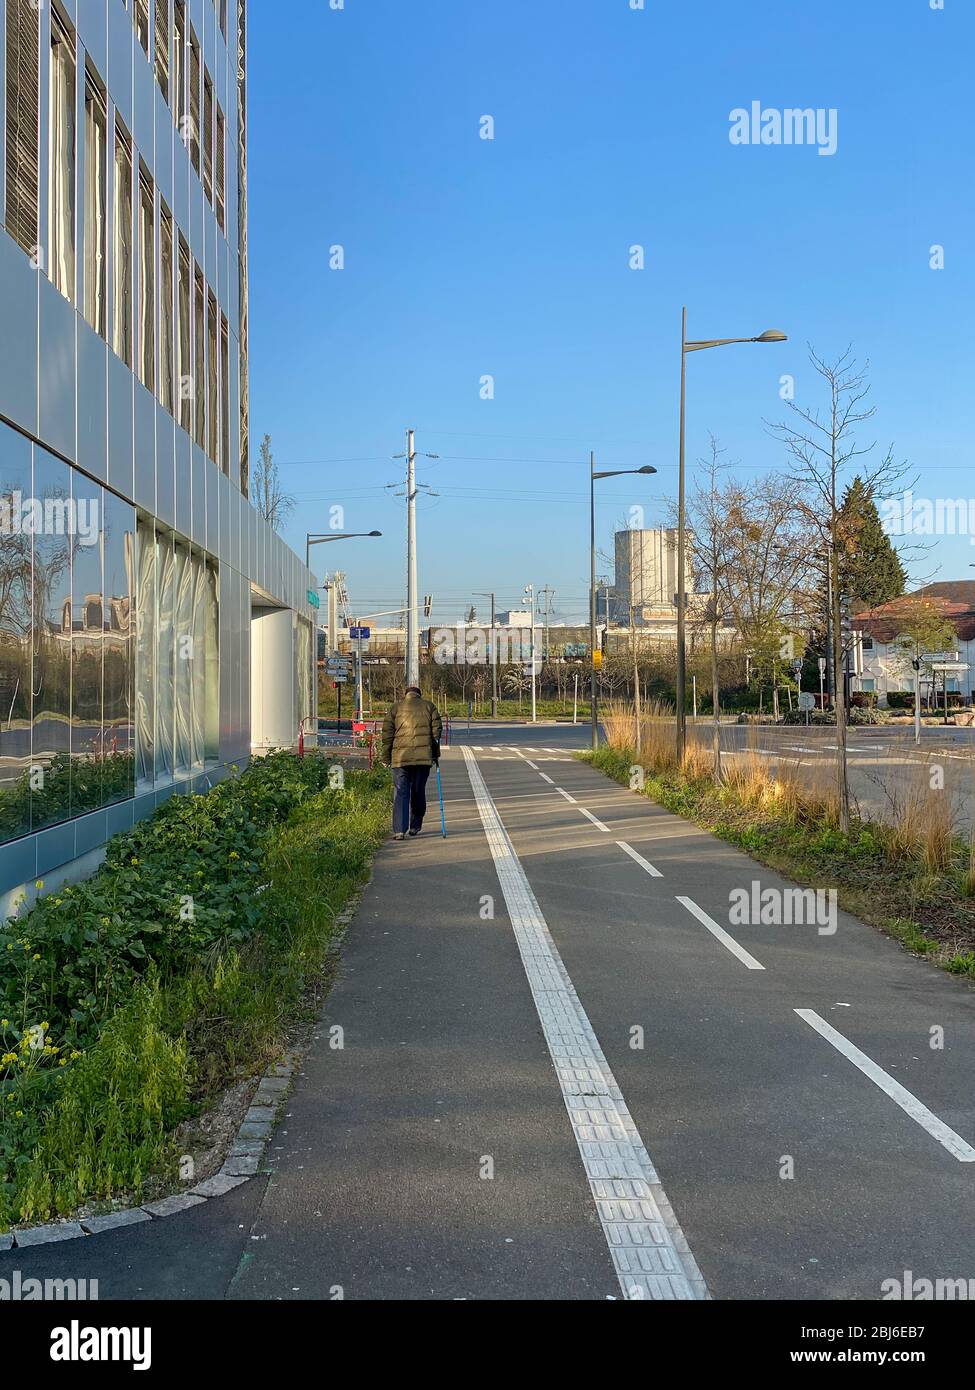 Straßburg, Frankreich - 2. April 2020: Alleinerziehender Mann auf einer leeren Straße in der Nähe des Rhena-Krankenhauses an der deutsch-französischen Grenze während der allgemeinen Sperrung aufgrund der weltweiten Cornavirus-Covid-19-Pandemie Stockfoto